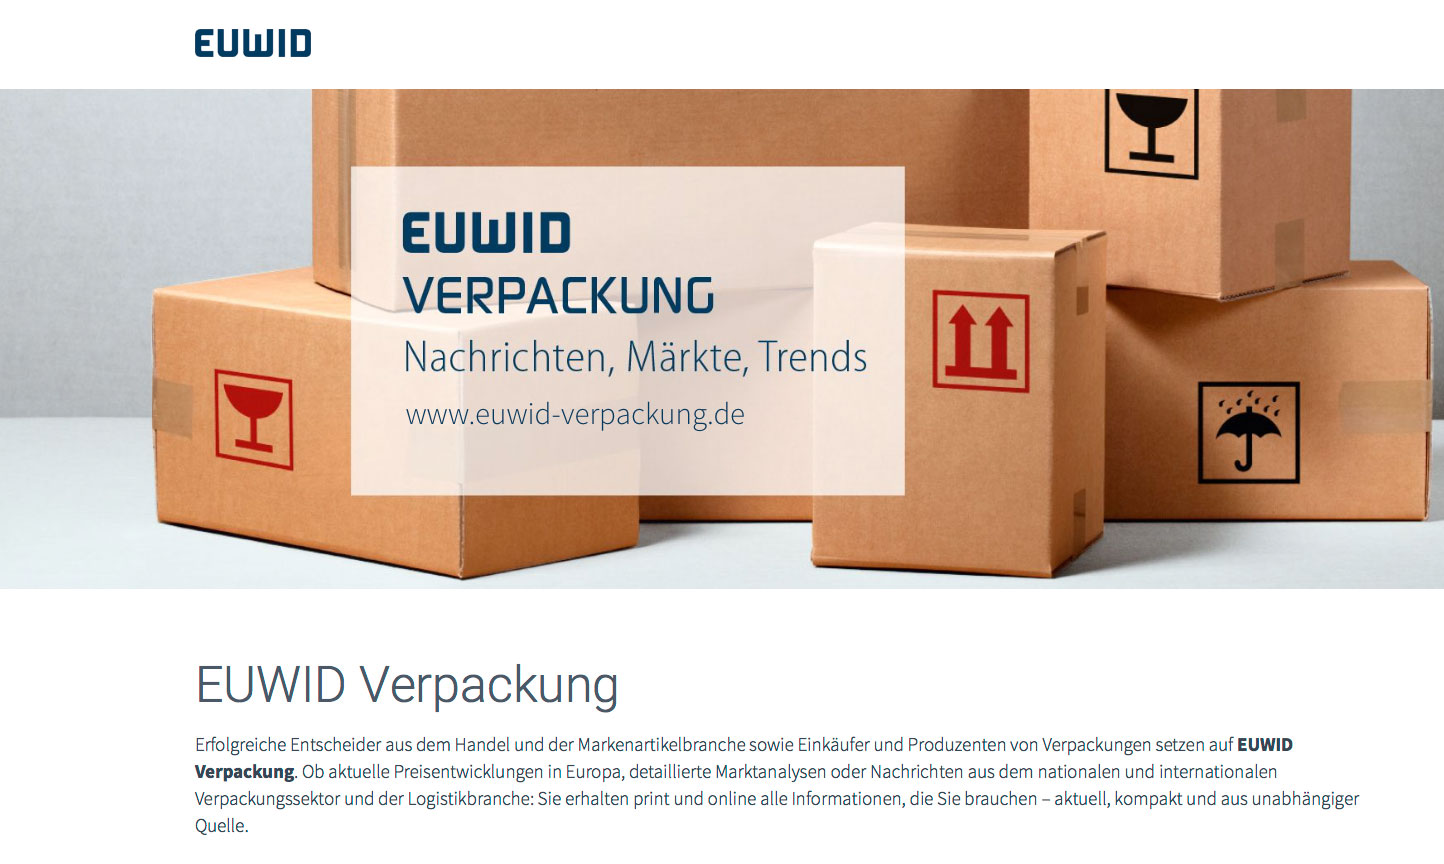 https://www.euwid-verpackung.de/suche.html